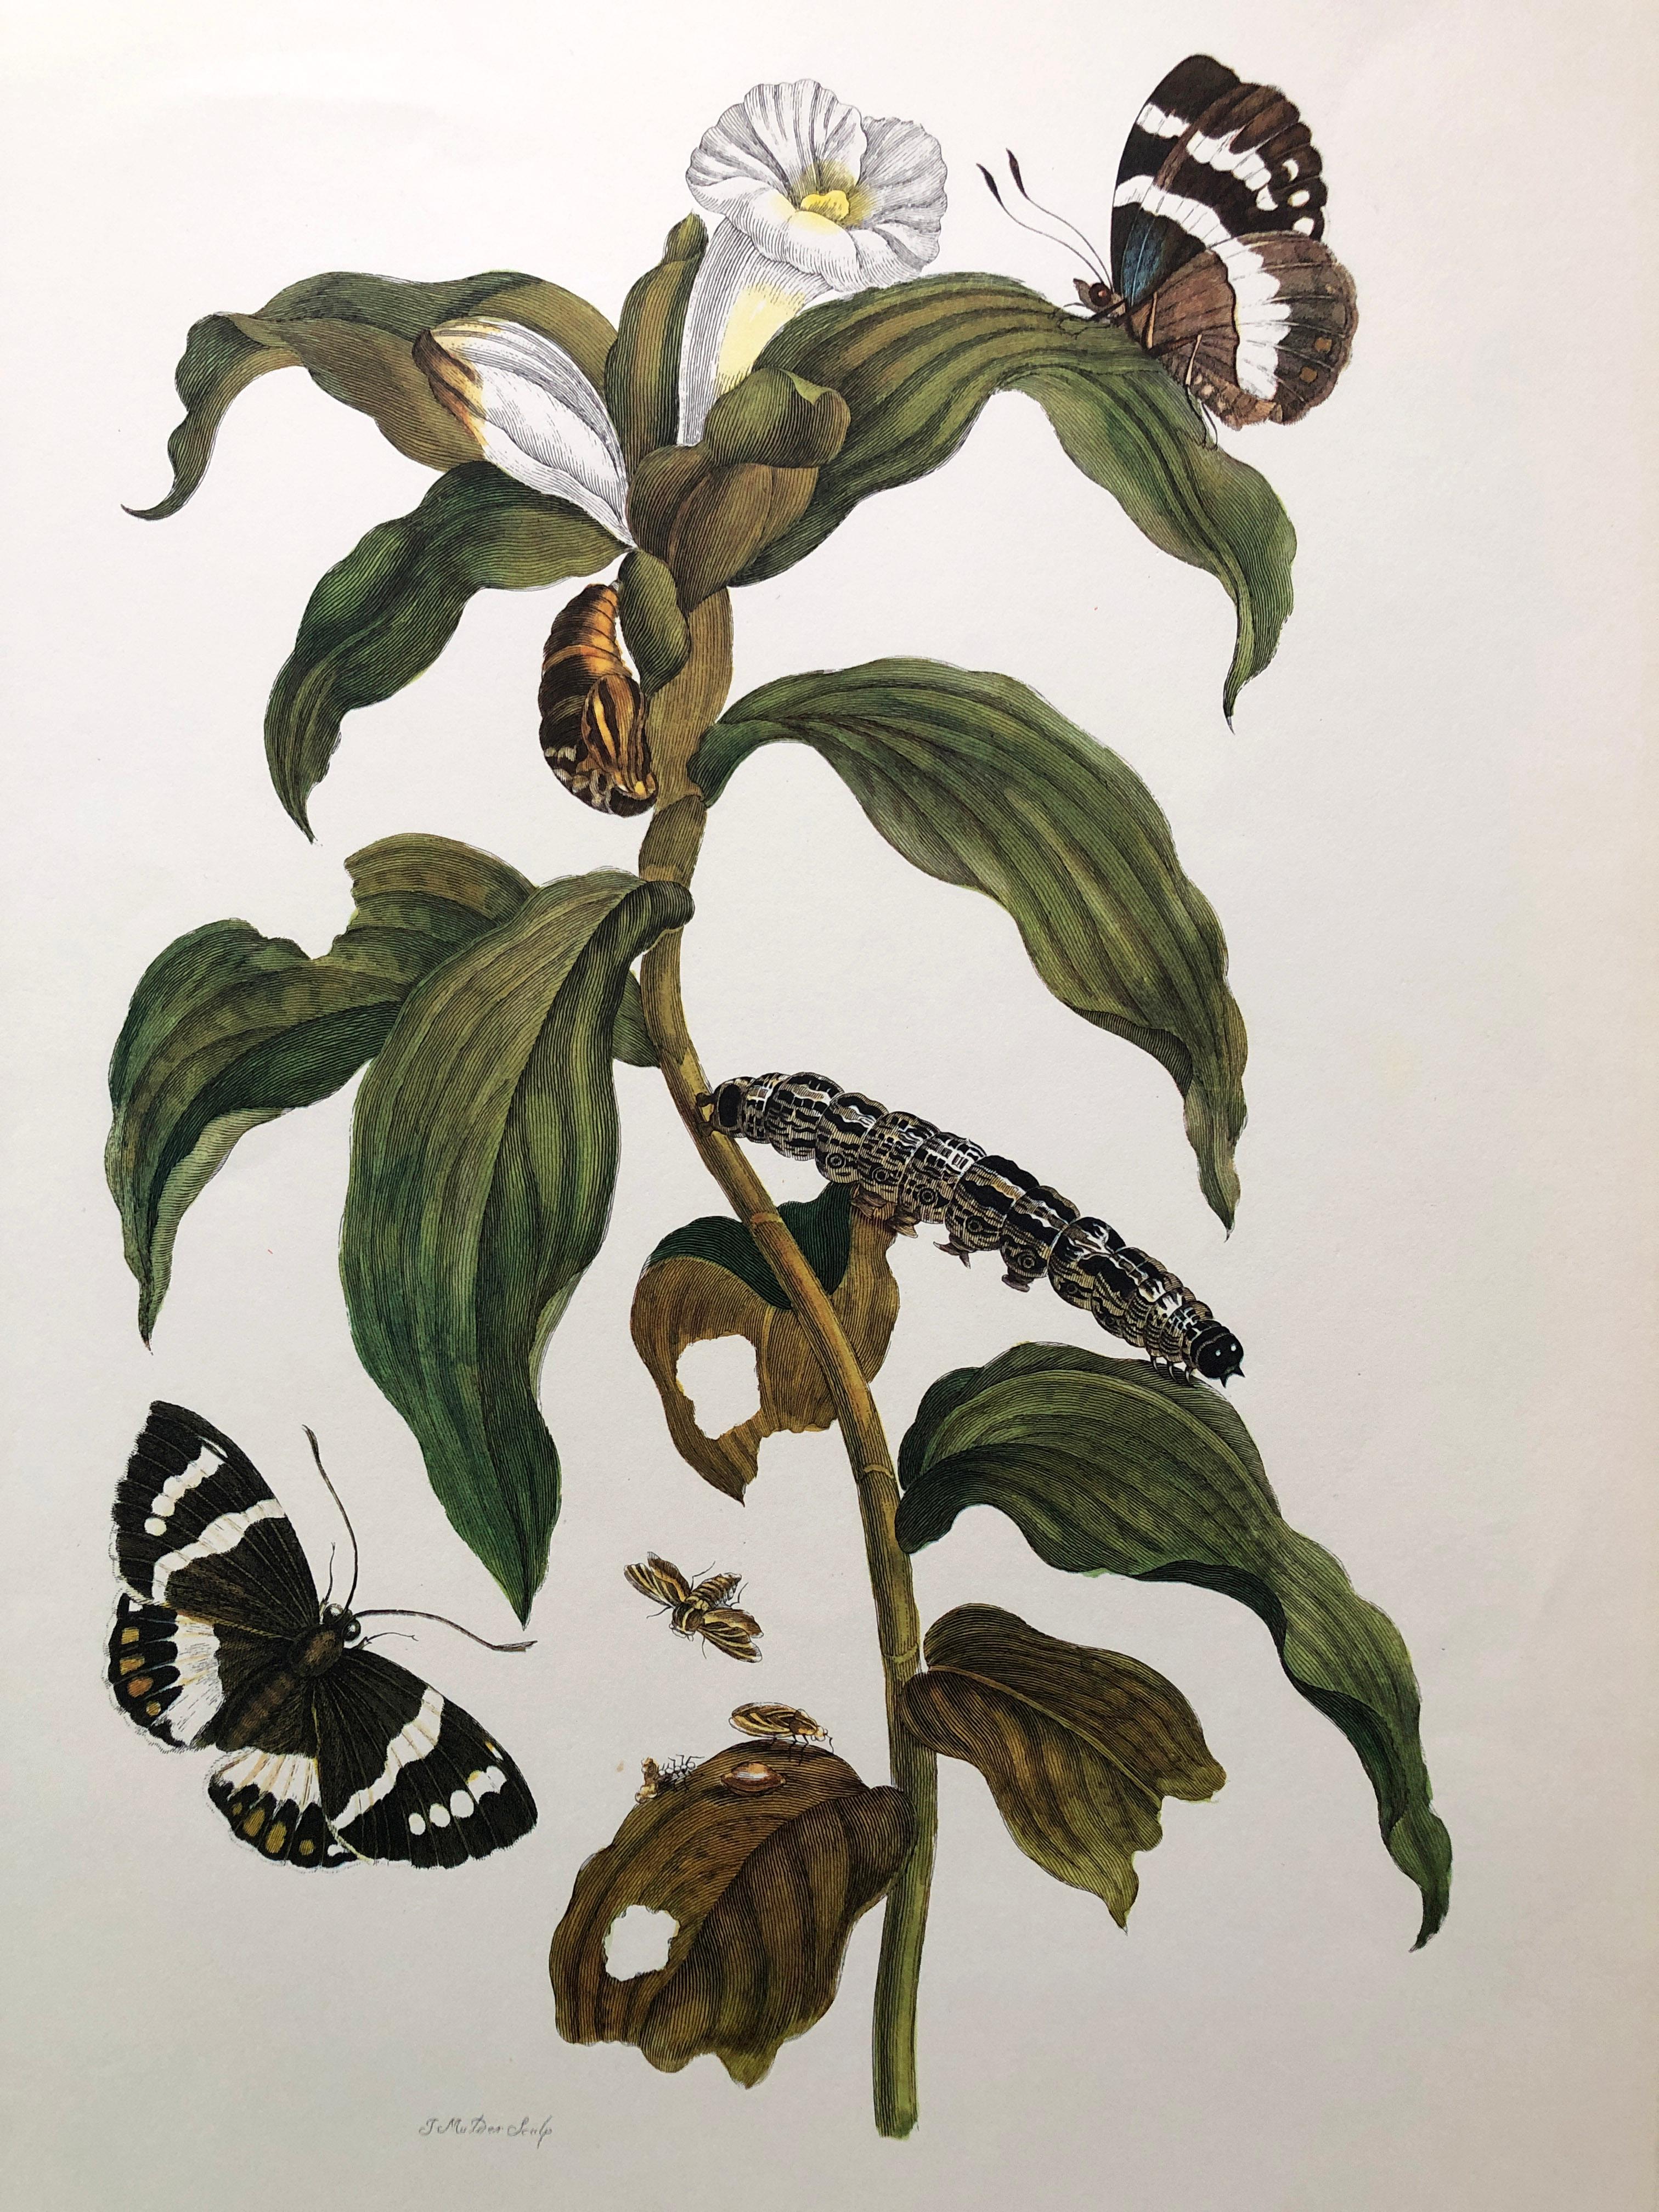 Other Maria Sibylla Merian - J. Mulder - Ginger plant and castnis moths Nr. 36 For Sale